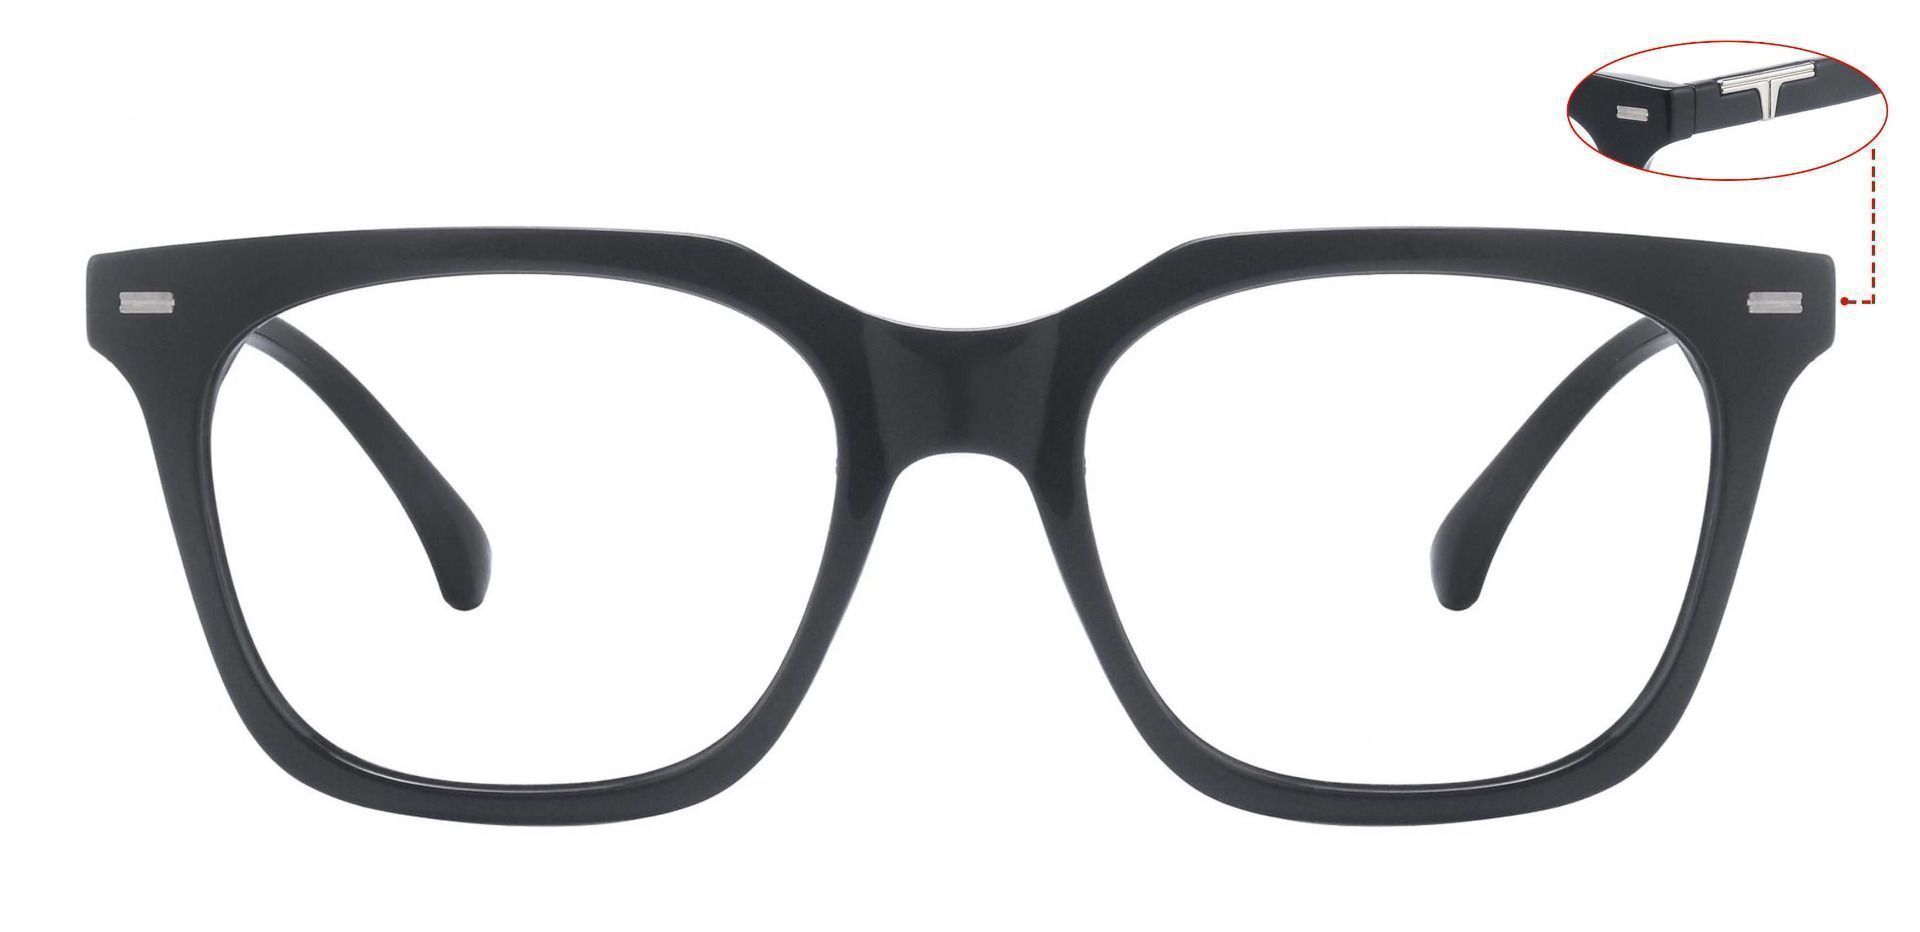 Klein Square Prescription Glasses - Black